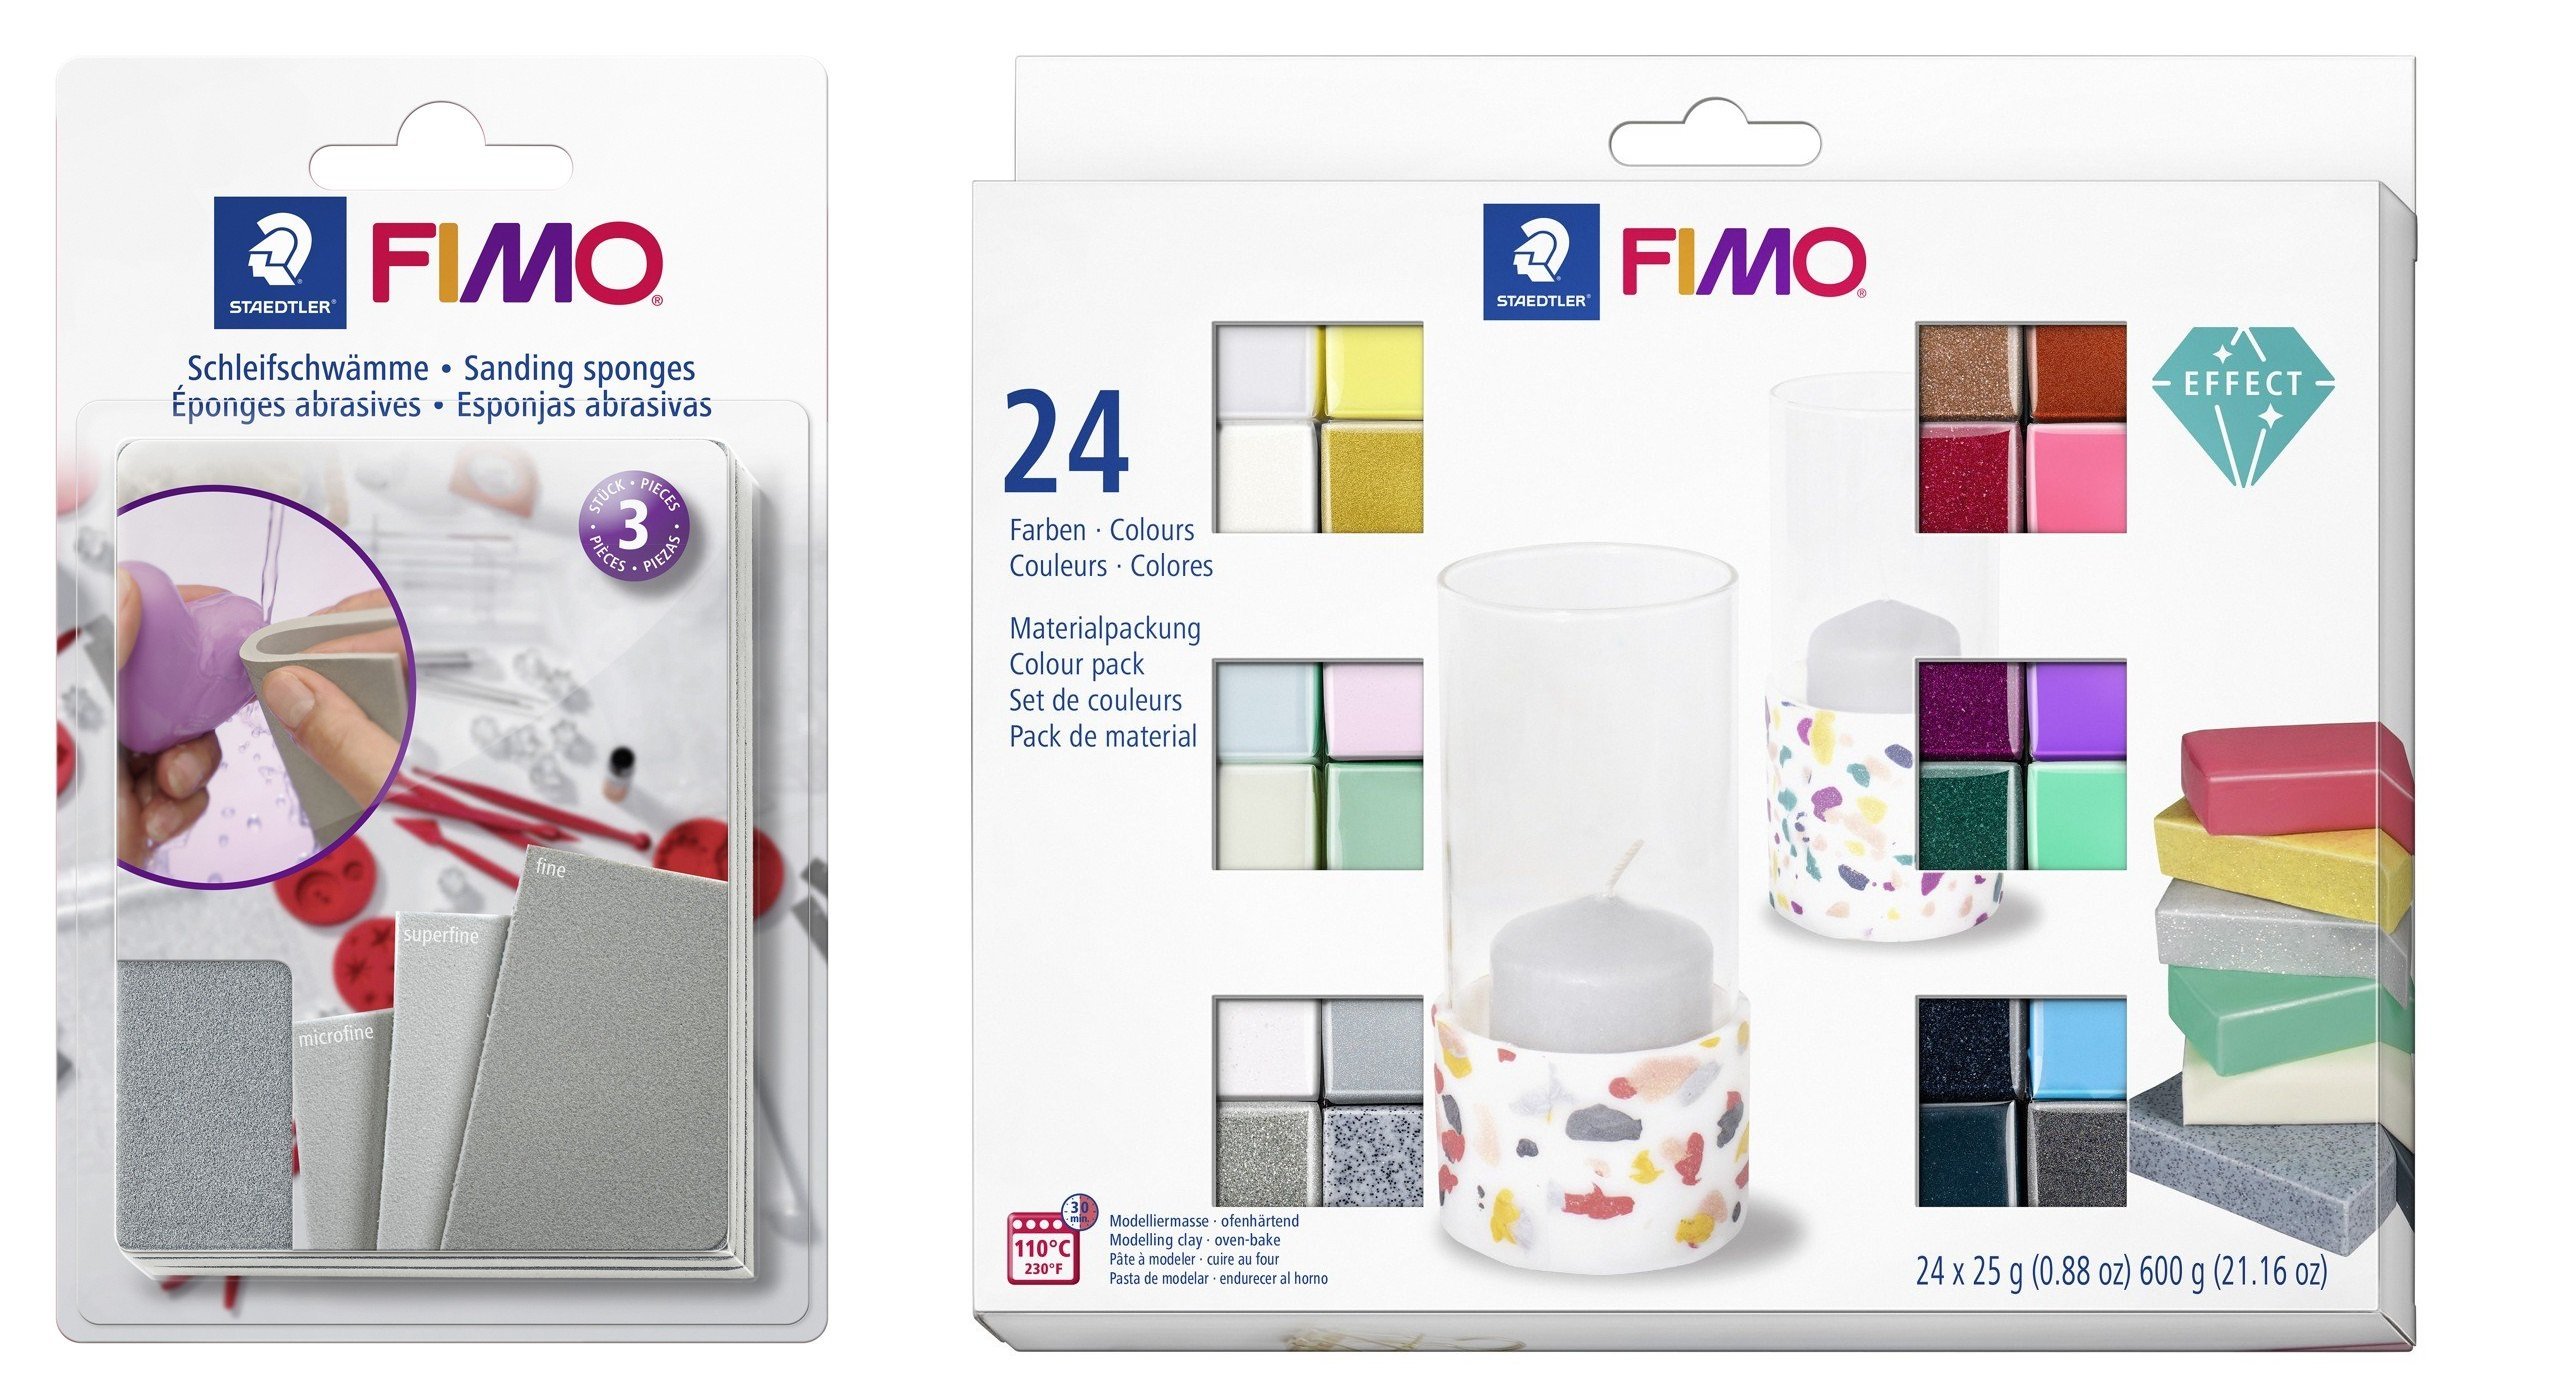 FIMO - Sanding and polishing set&Effect Set 24 Colors - Leker